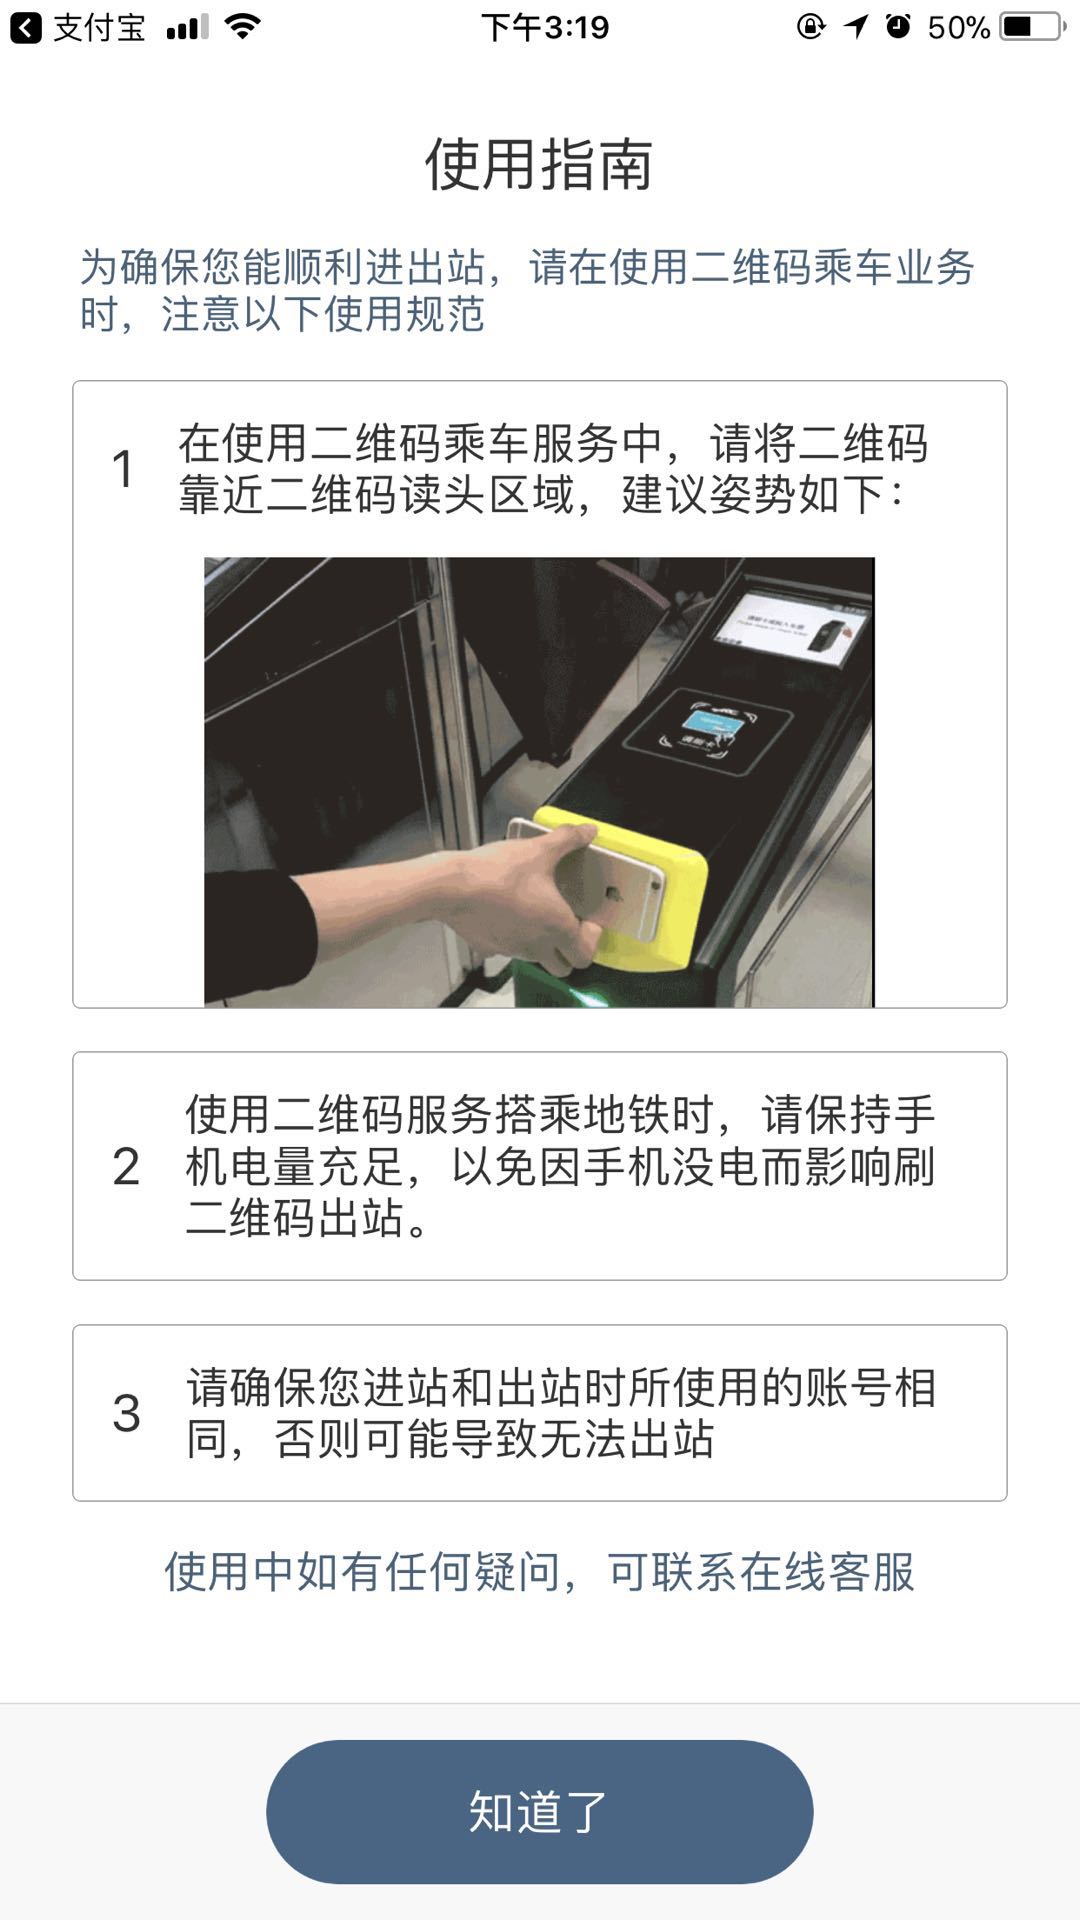 无须NFC 北京地铁即将开启手机扫码乘车时代